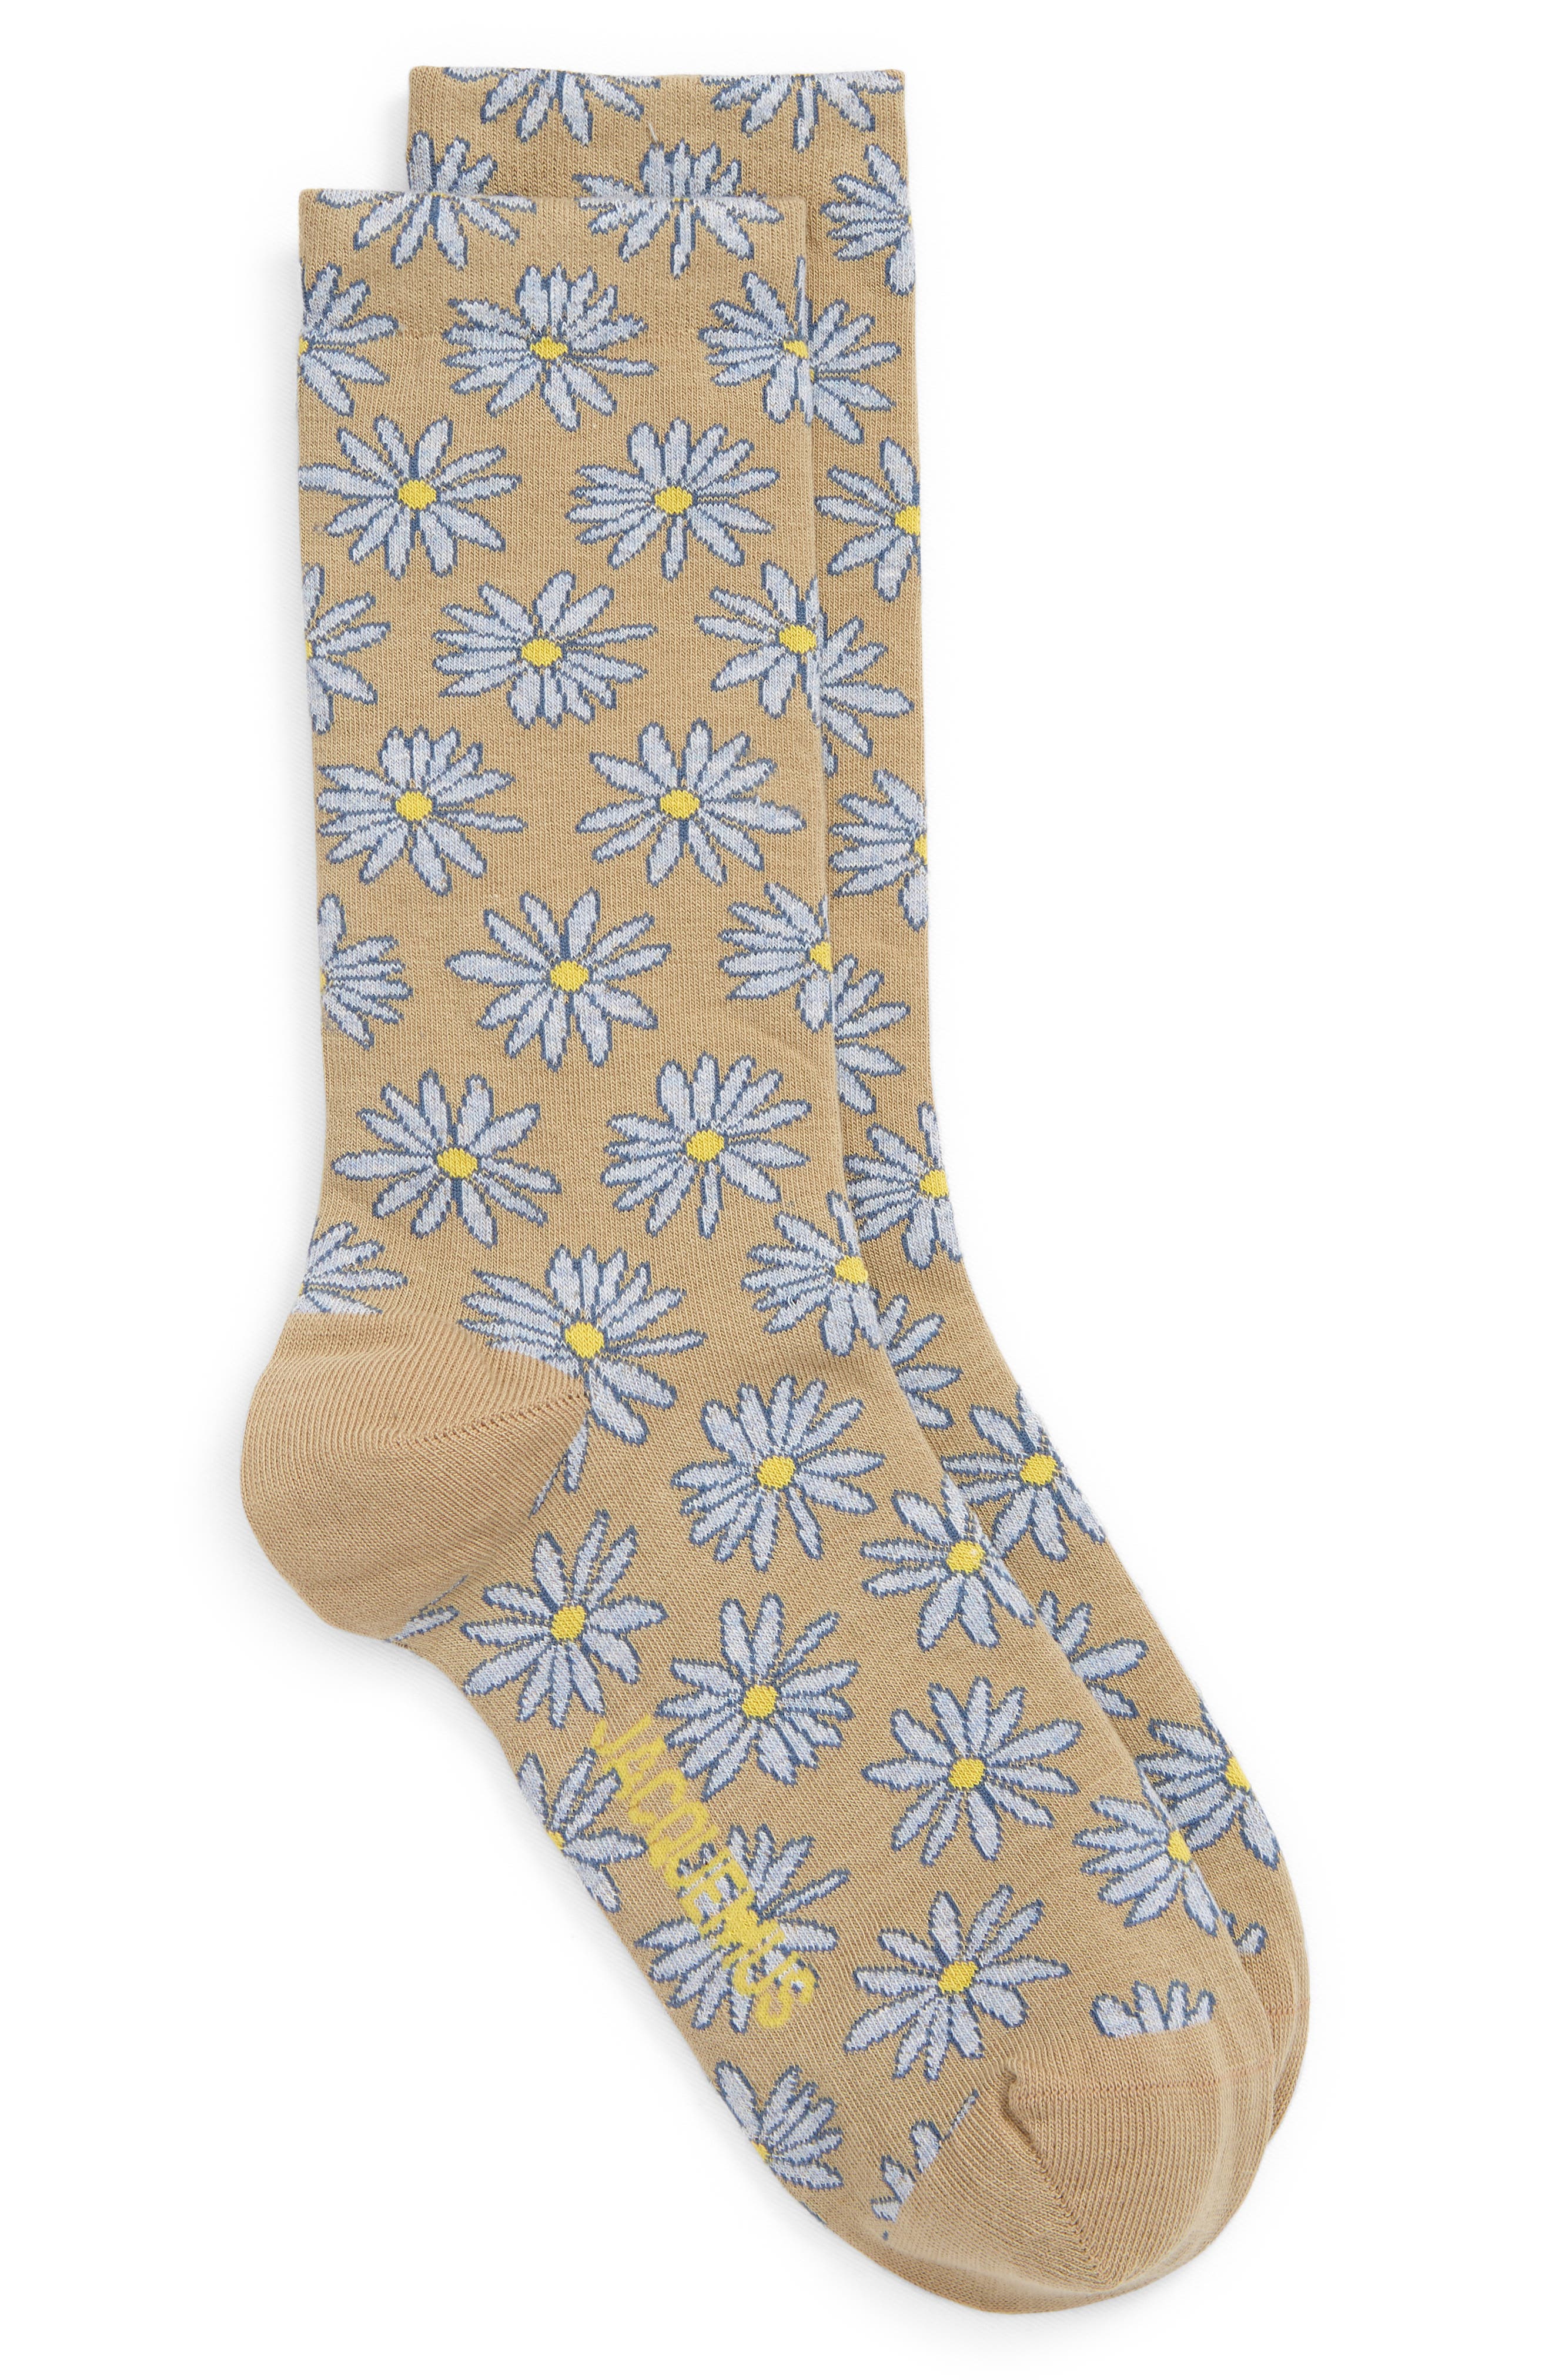 Jacquemus Les Chaussettes Fleurs Floral Jacquard Cotton Blend Socks in Print Blue/Beige Flowers